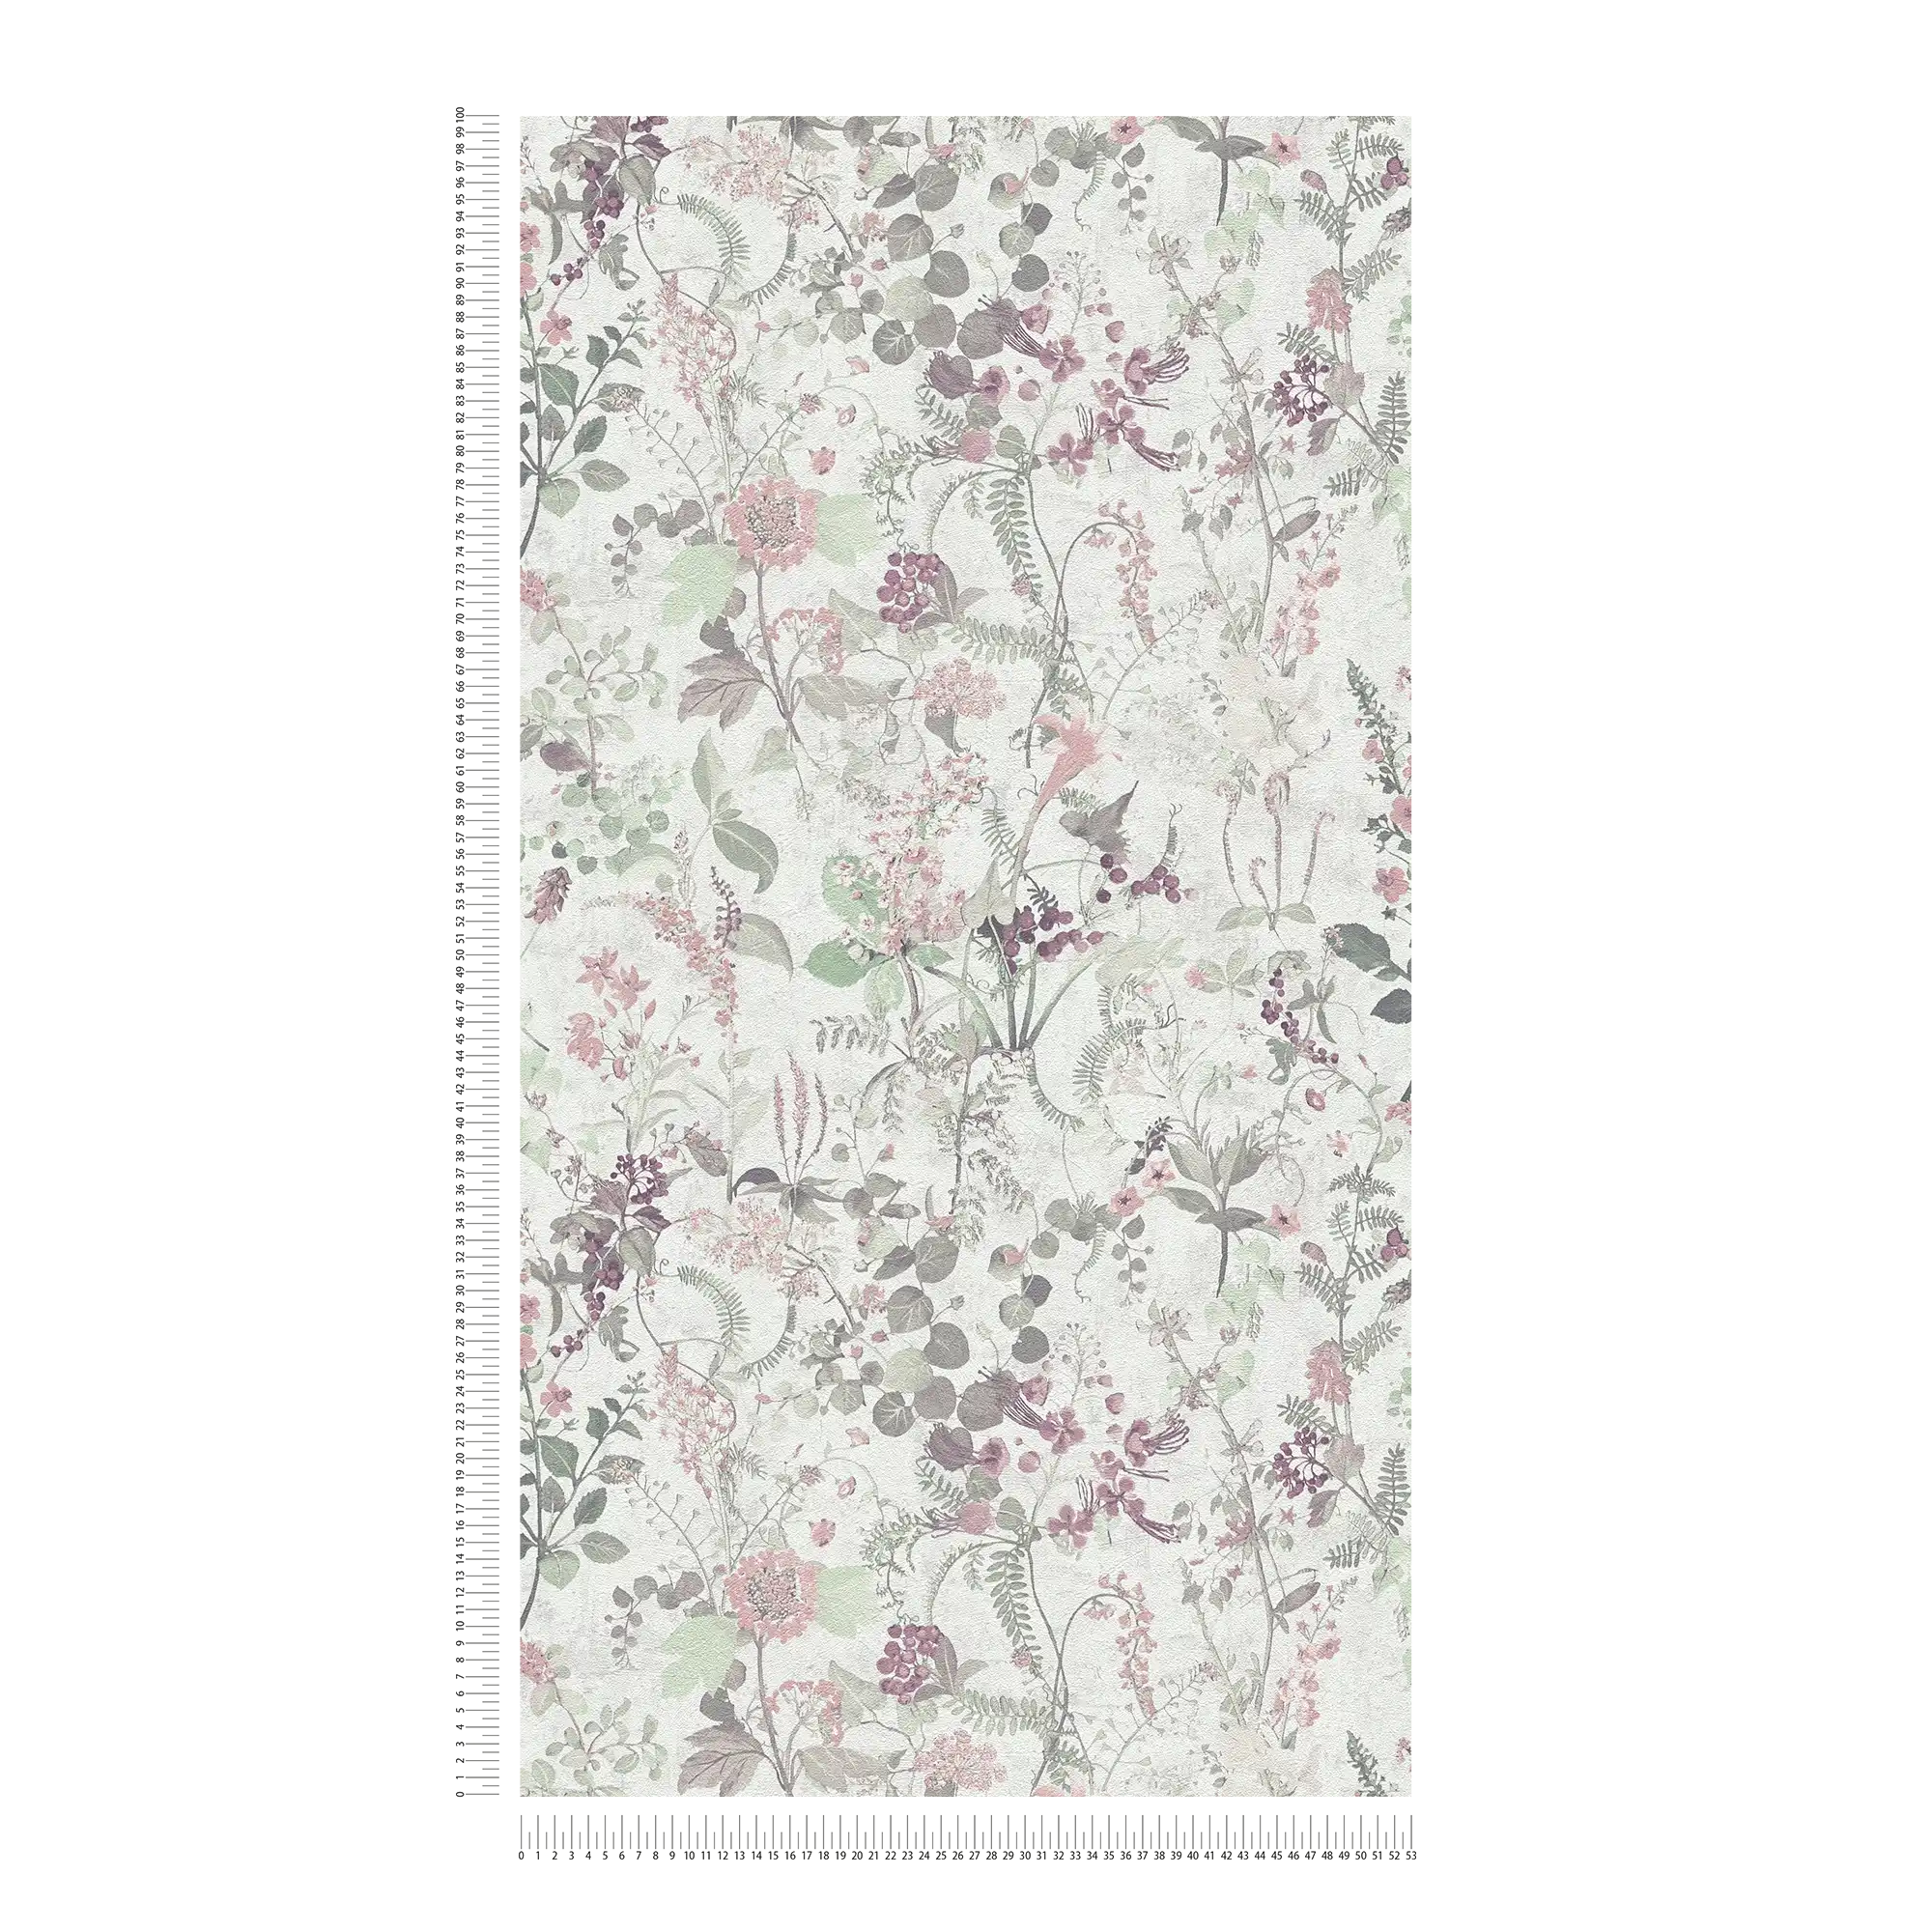             Natuurbehang met bloemenpatroon - grijs, groen, roze
        